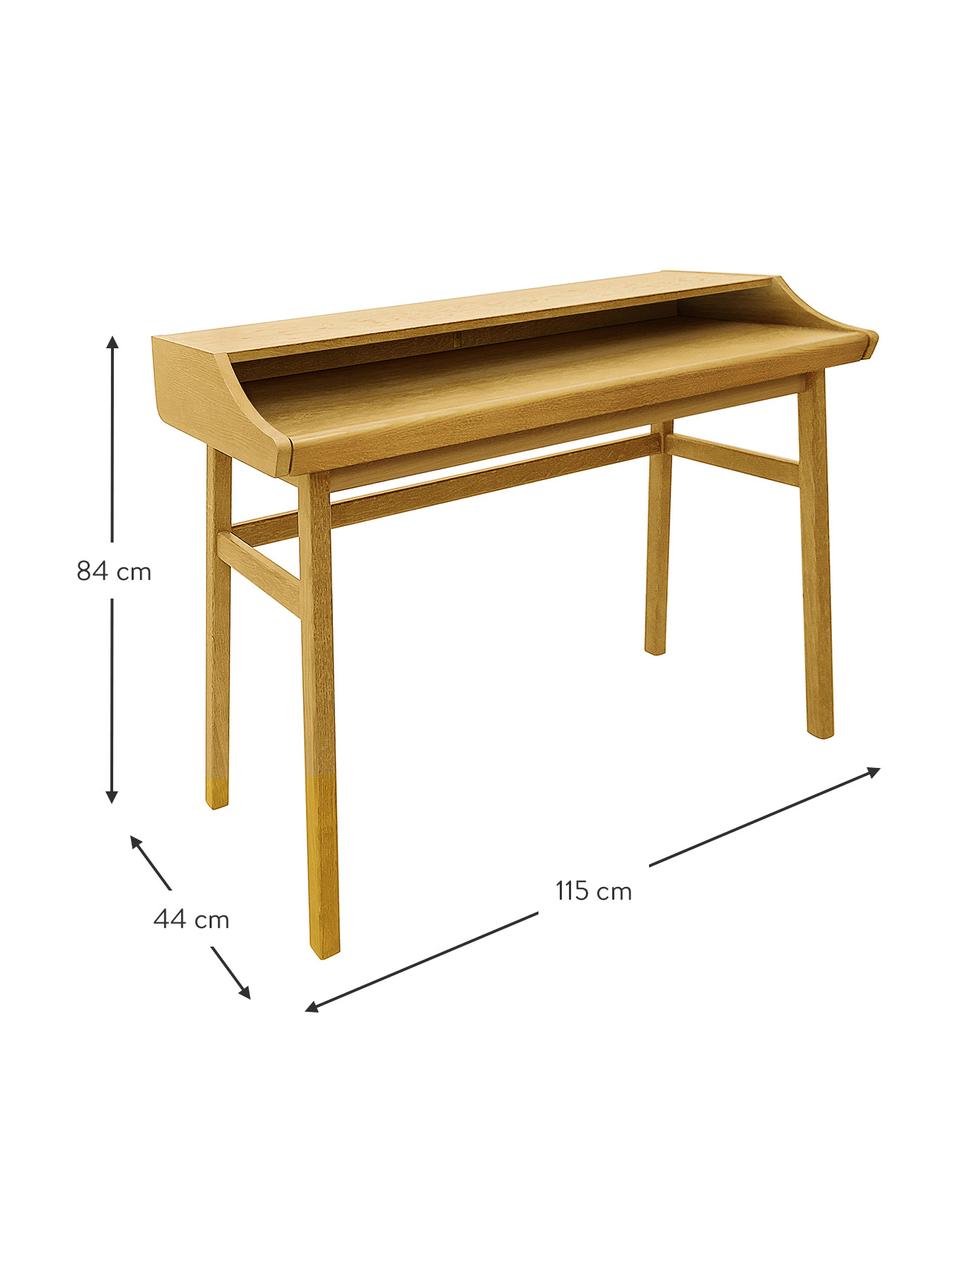 Rozkládací psací stůl Carteret, 115 x 44-68 cm, Světle hnědá, Š 115 cm, V 84 cm